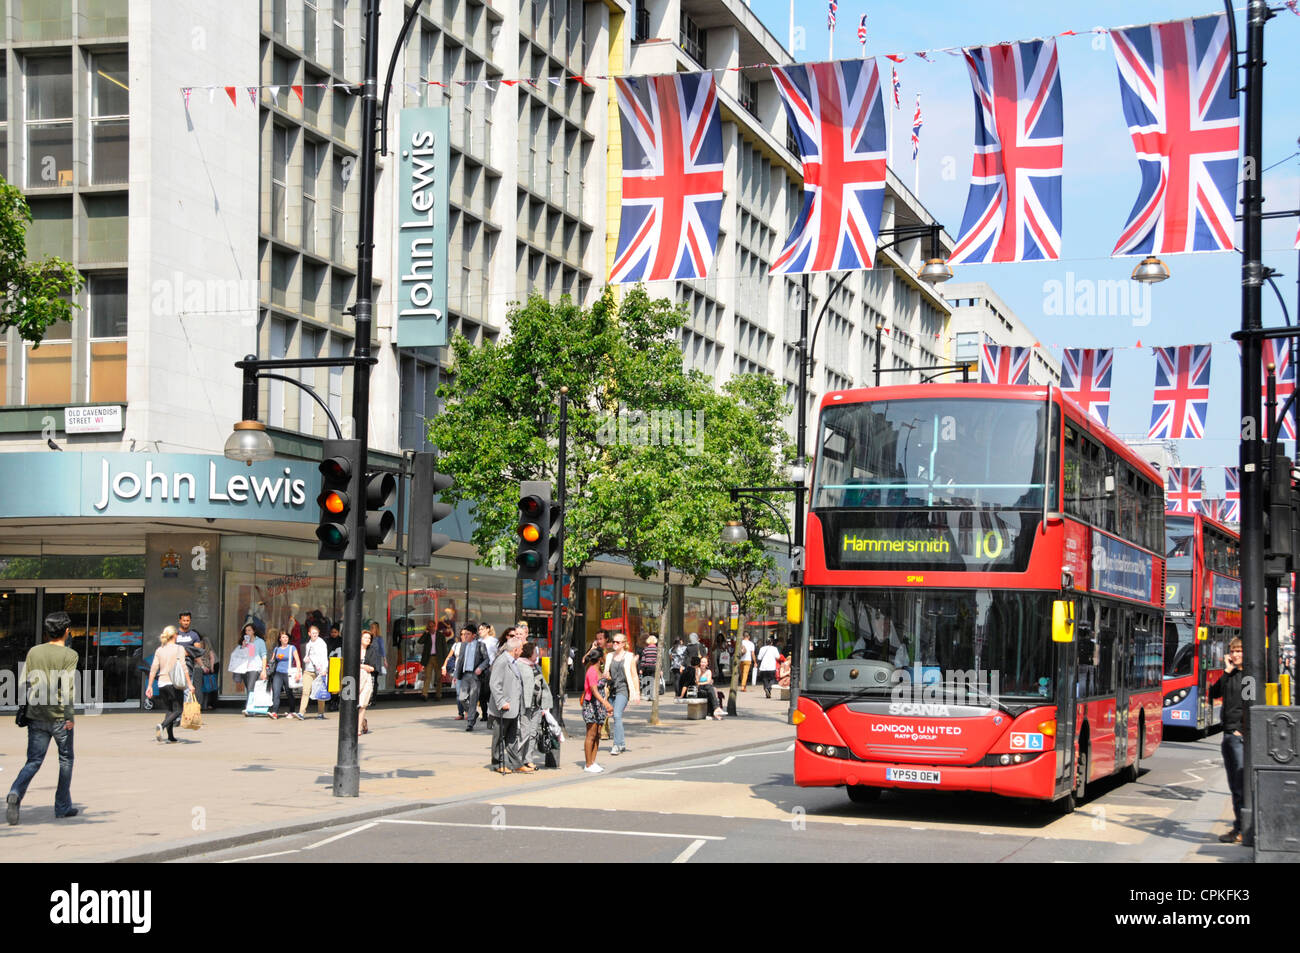 Autobus rossi al di fuori di John Lewis Store in Oxford Street con il giubileo Unione martinetti che possono anche essere nel luogo durante il 2012 Olimpiadi Foto Stock